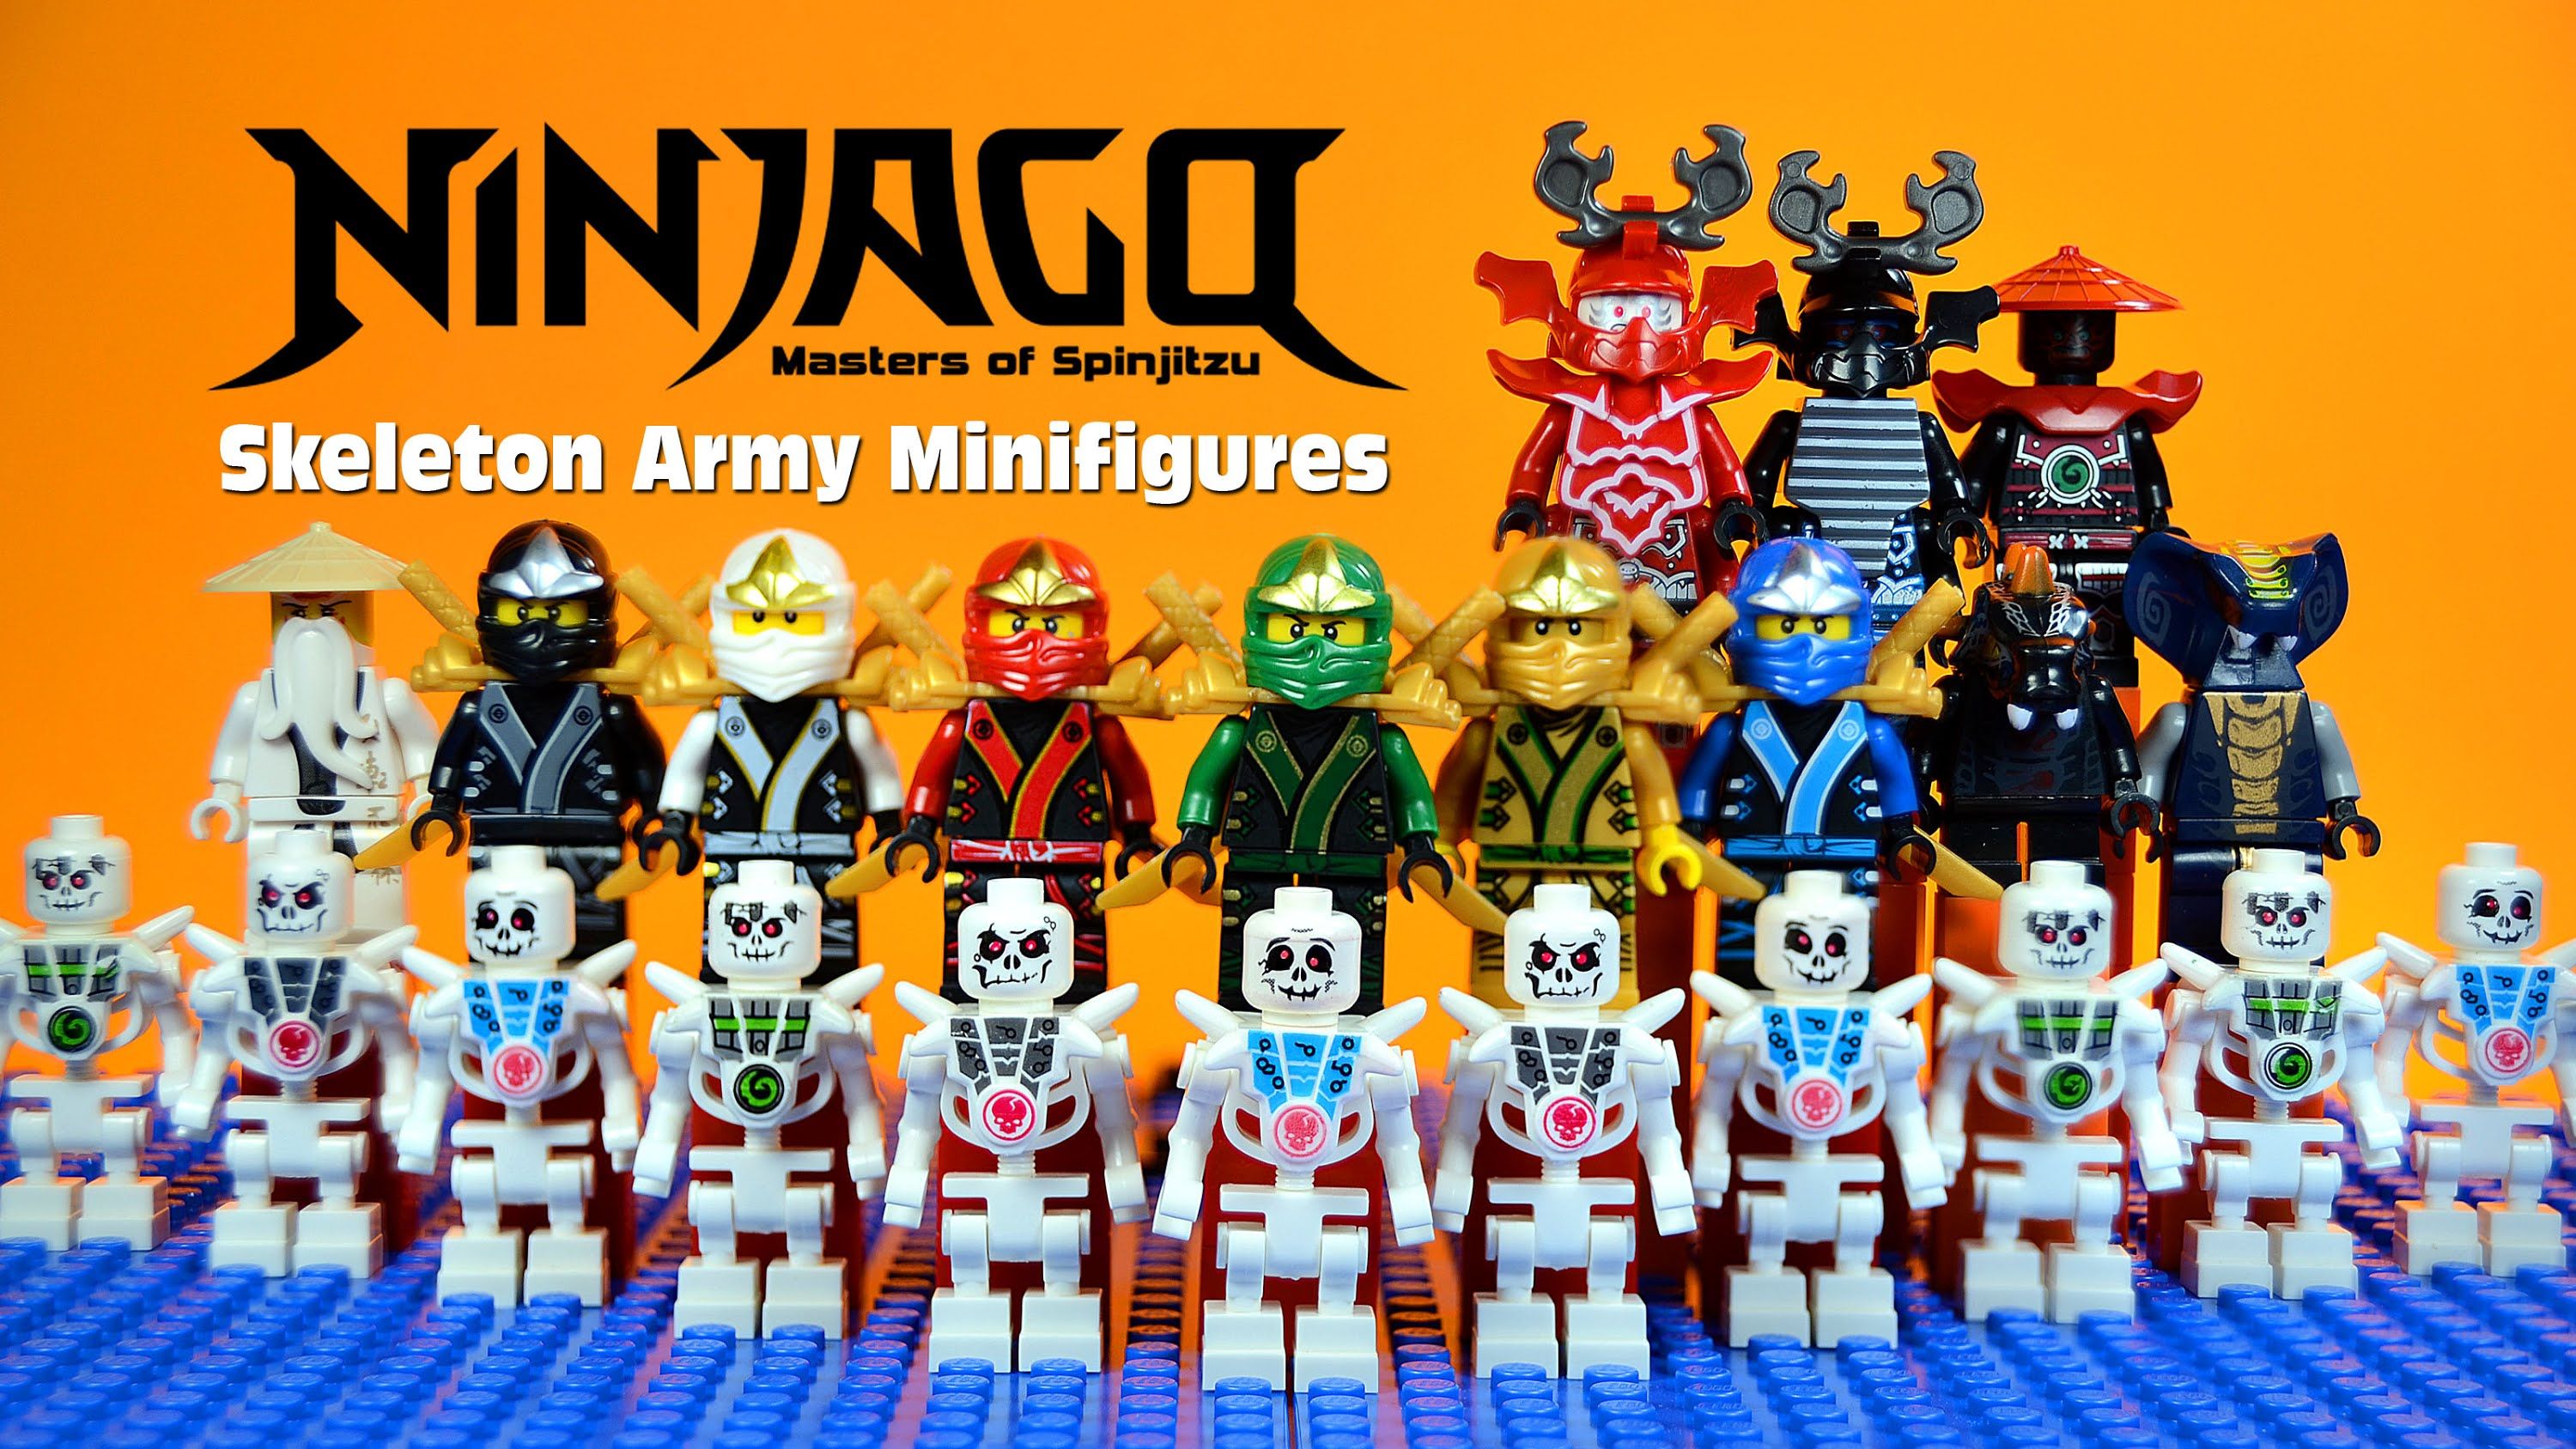 Lego Ninjago: Masters Of Spinjitzu wallpaper, Movie, HQ Lego Ninjago: Masters Of Spinjitzu pictureK Wallpaper 2019